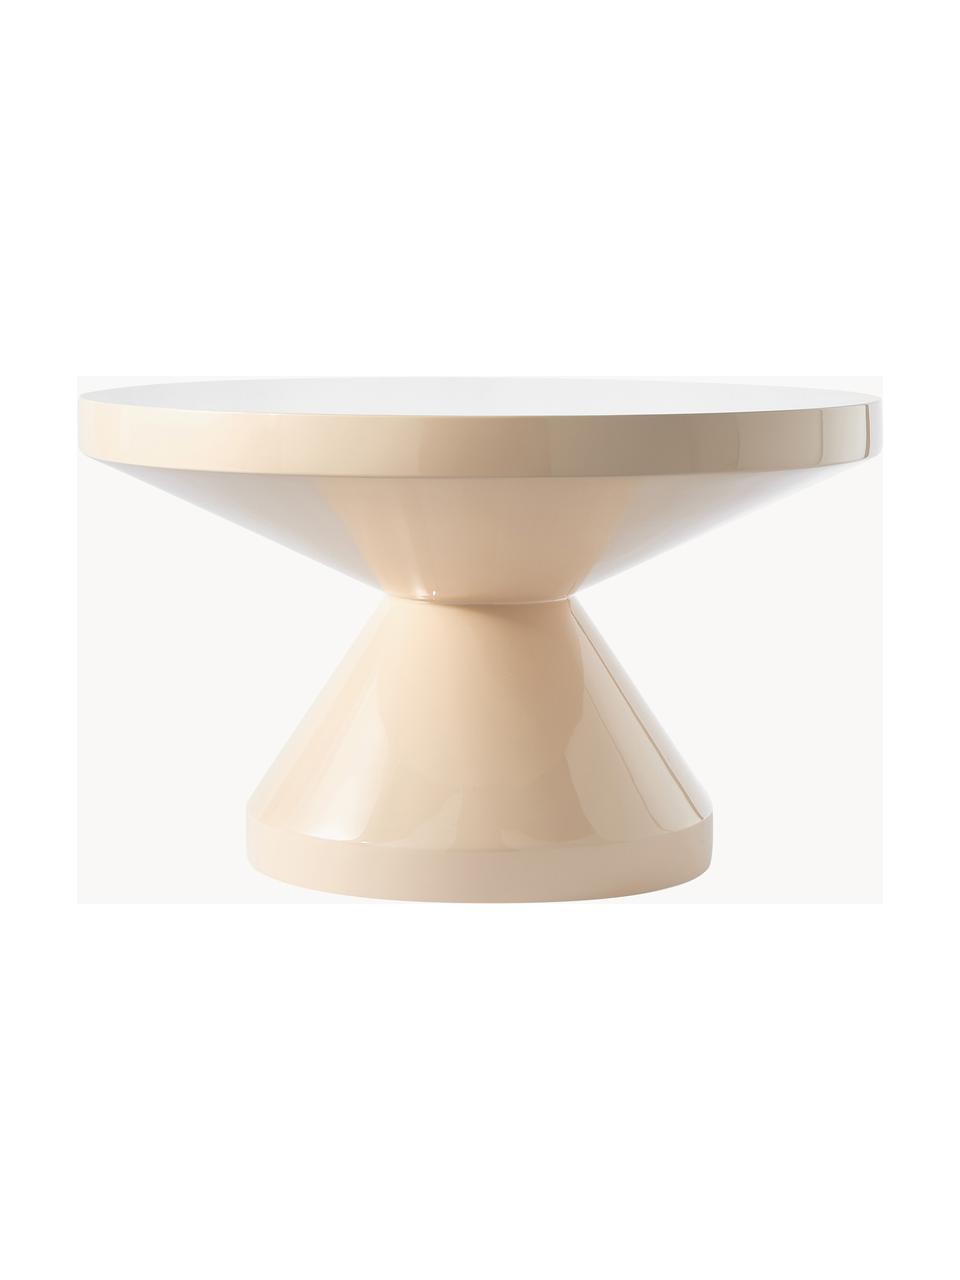 Table basse ronde Zig Zag, Plastique, laqué, Beige clair, Ø 60 cm